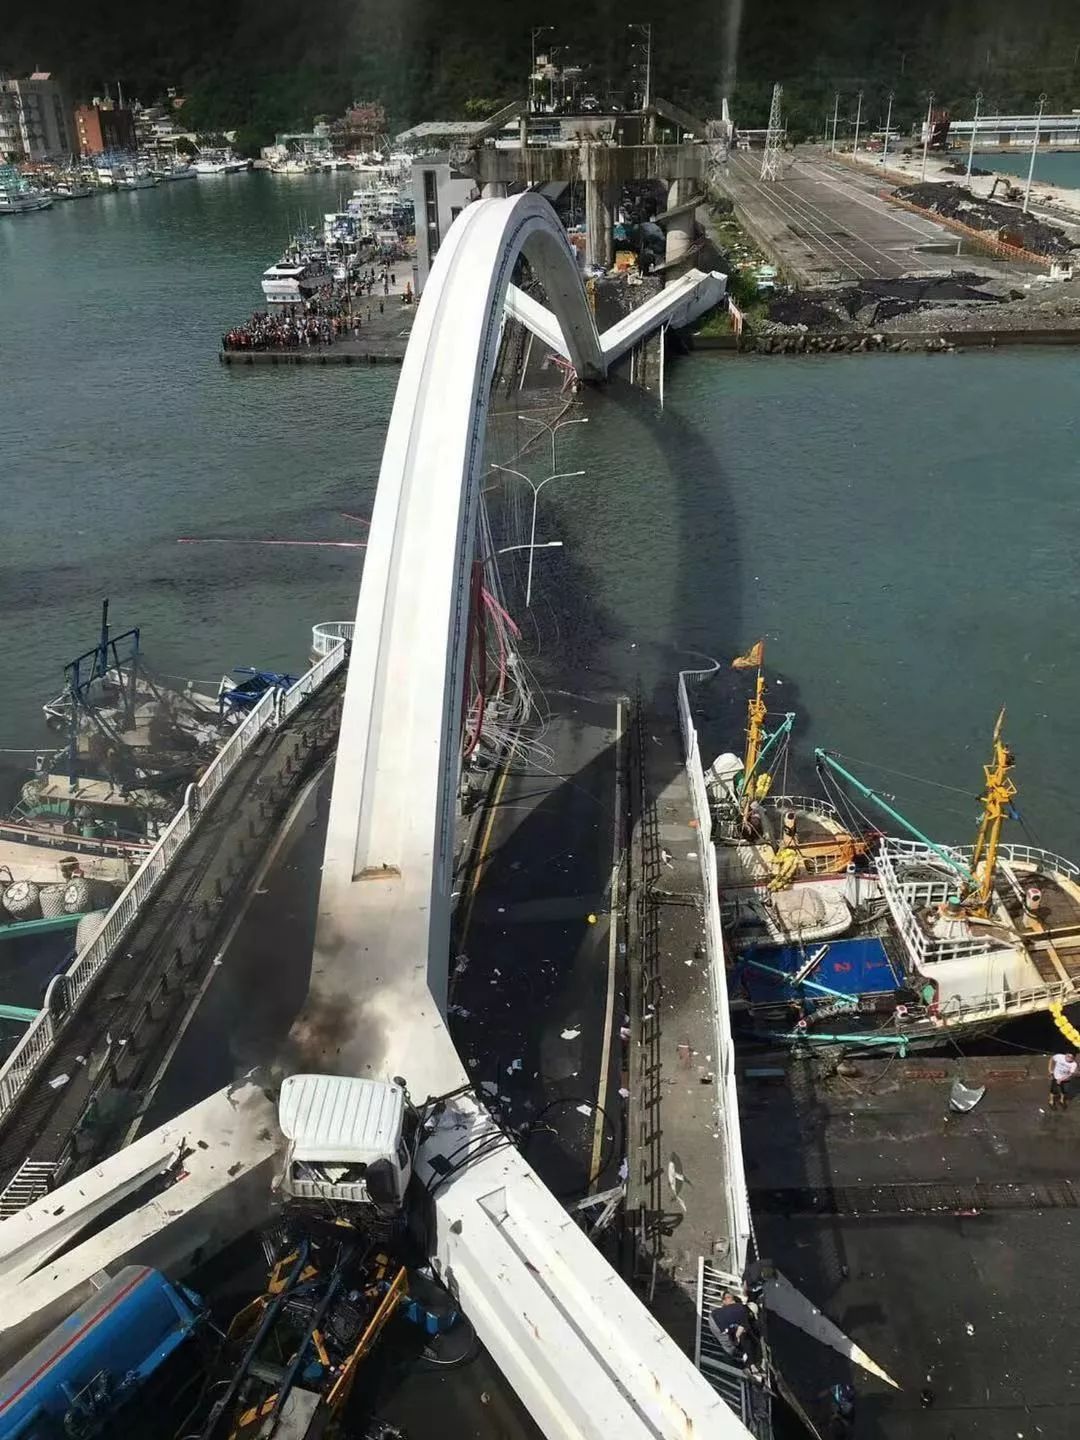 粤港澳跨海大桥断裂图片